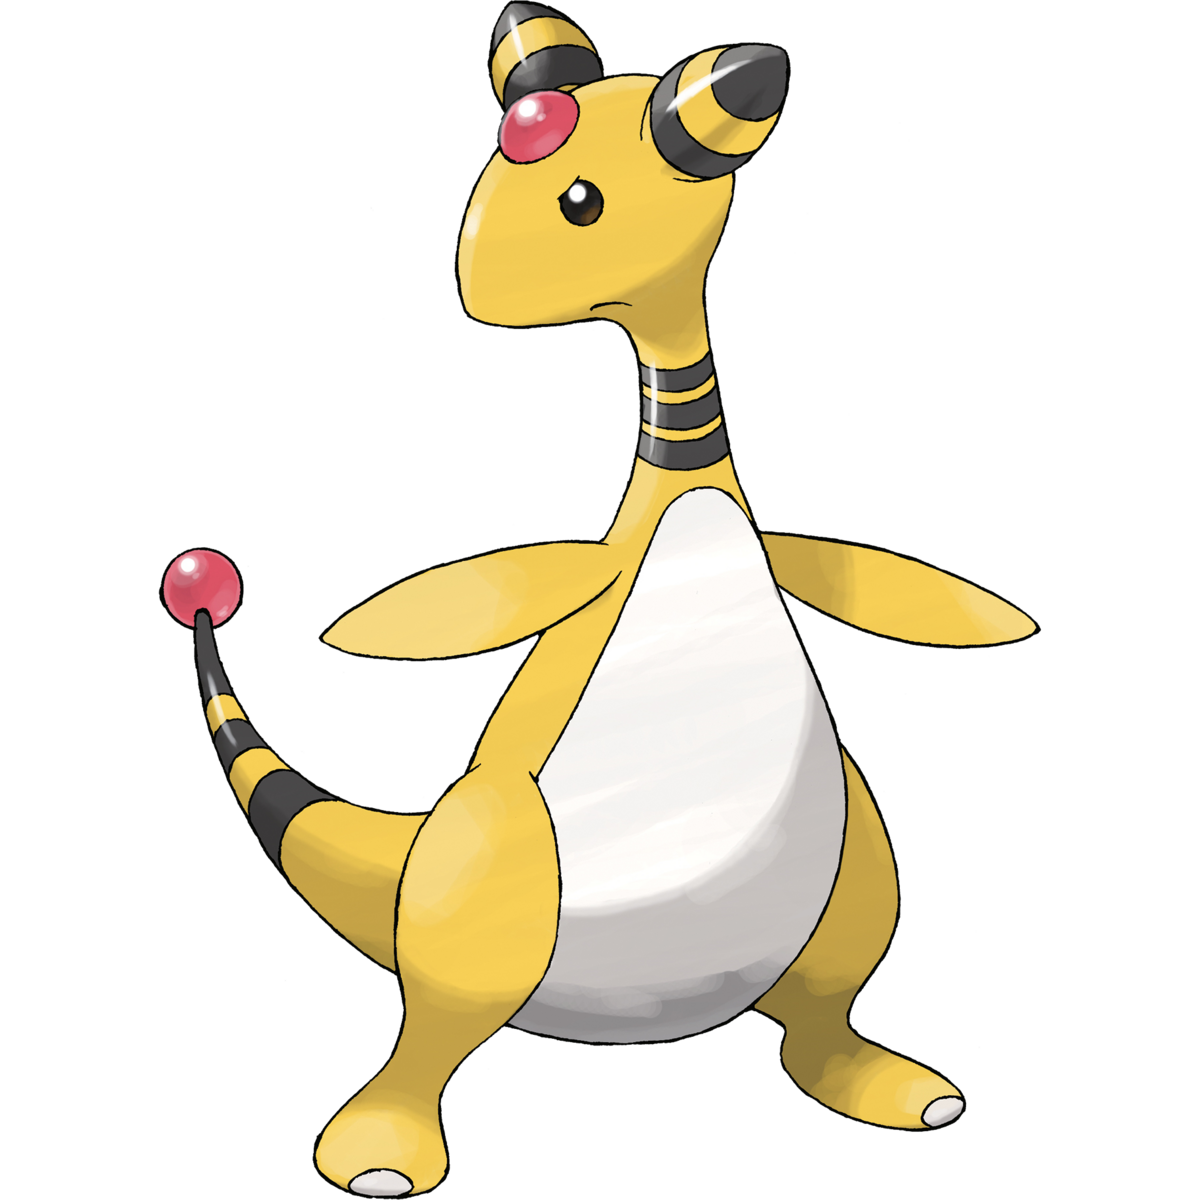 Ampharos (Pokémon) - Bulbapedia, the community-driven Pokémon encyclopedia